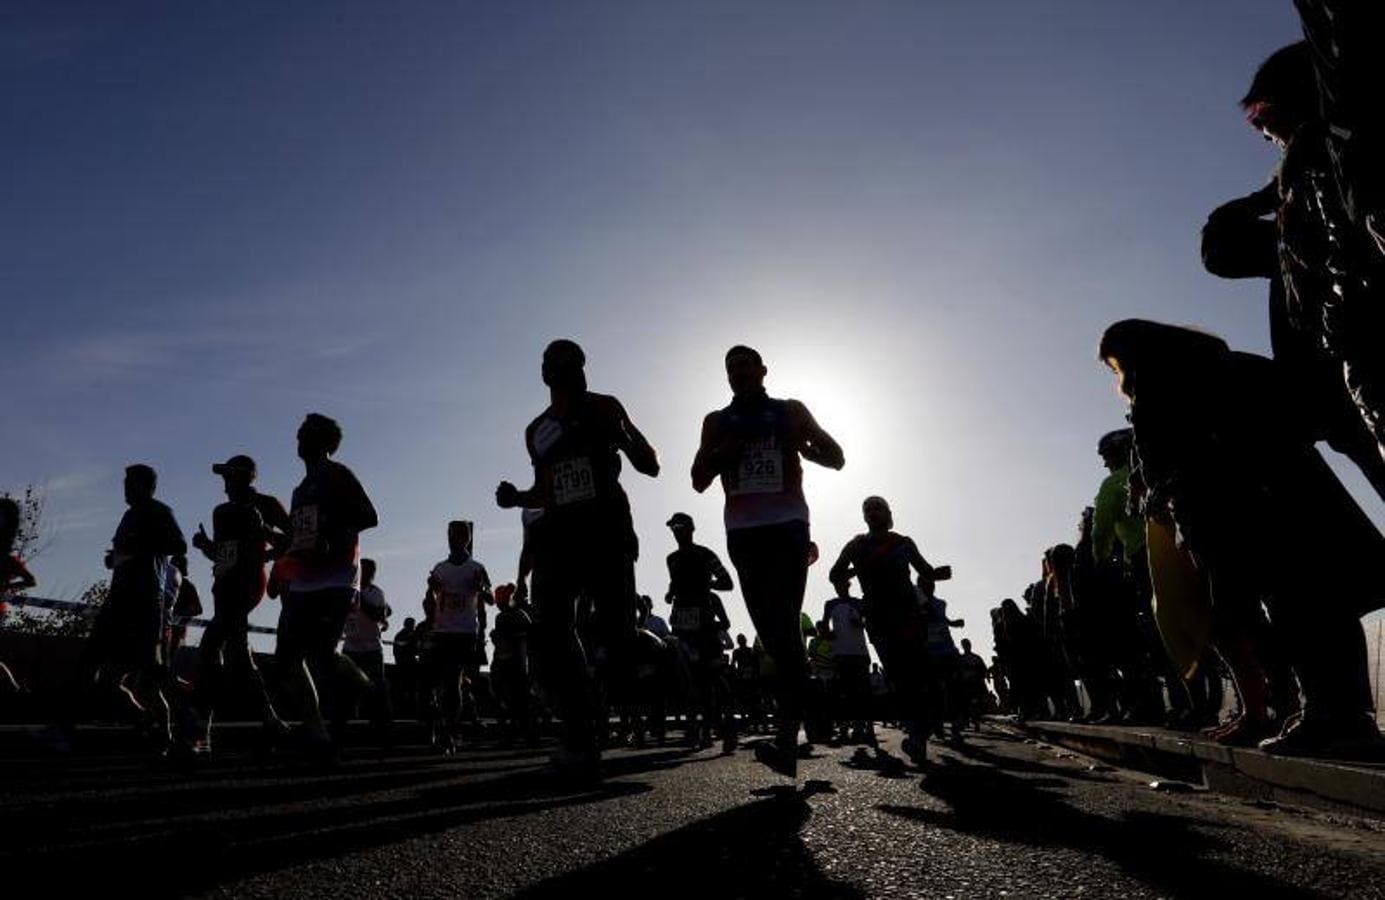 La carrera de la Media Maratón de Córdoba, en imágenes